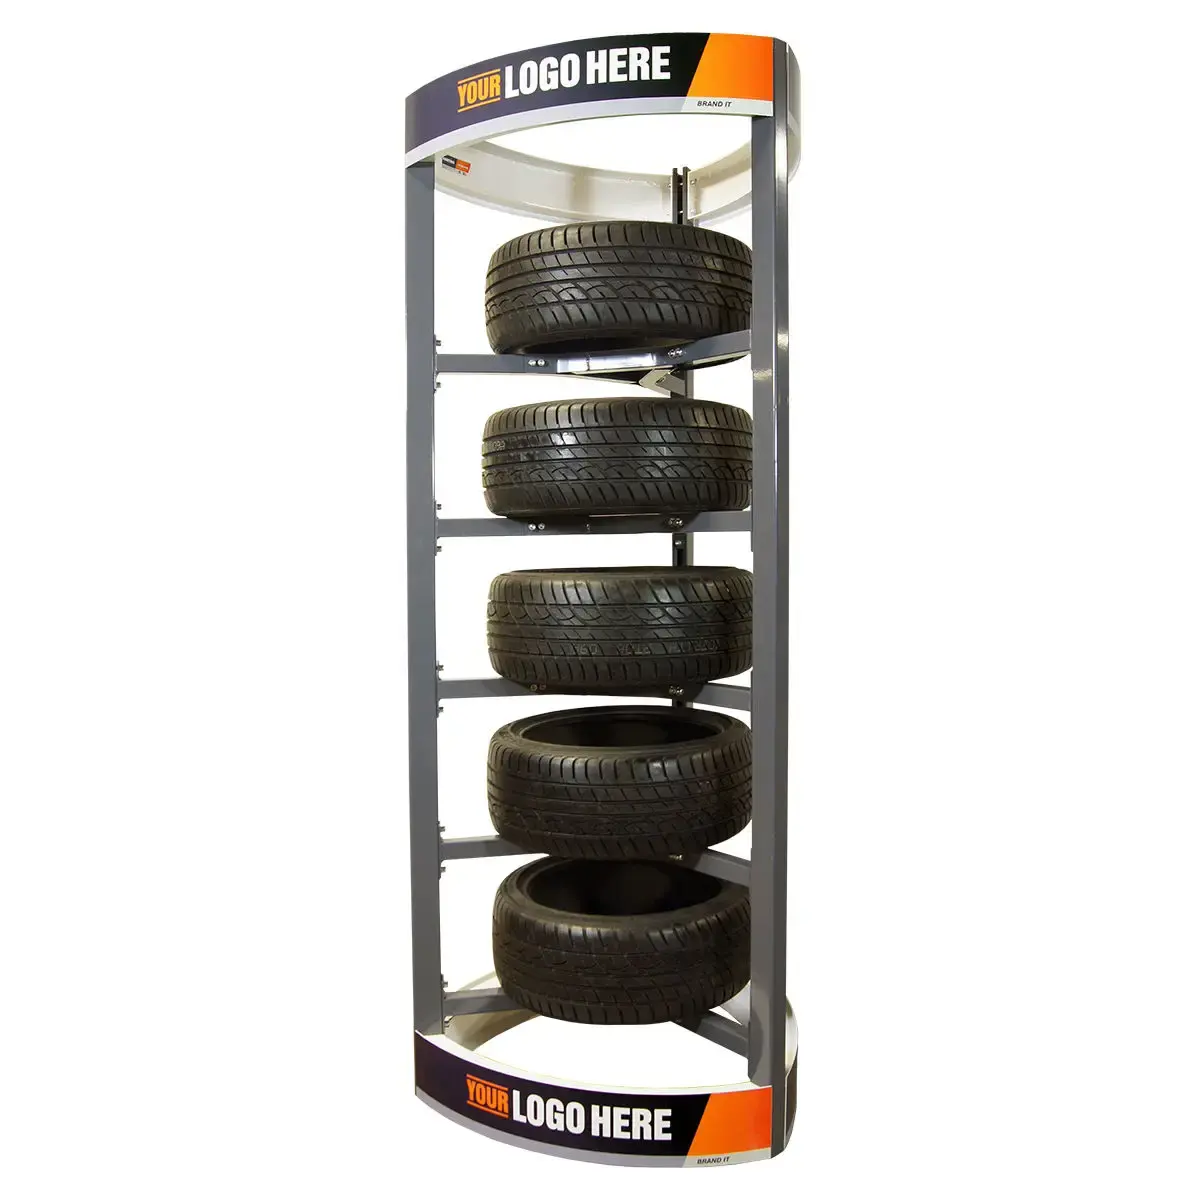 Precio de fábrica, estante de exhibición de almacenamiento de ruedas de Metal con logotipo personalizado, estante de exhibición de neumáticos para tienda minorista, tienda de automóviles